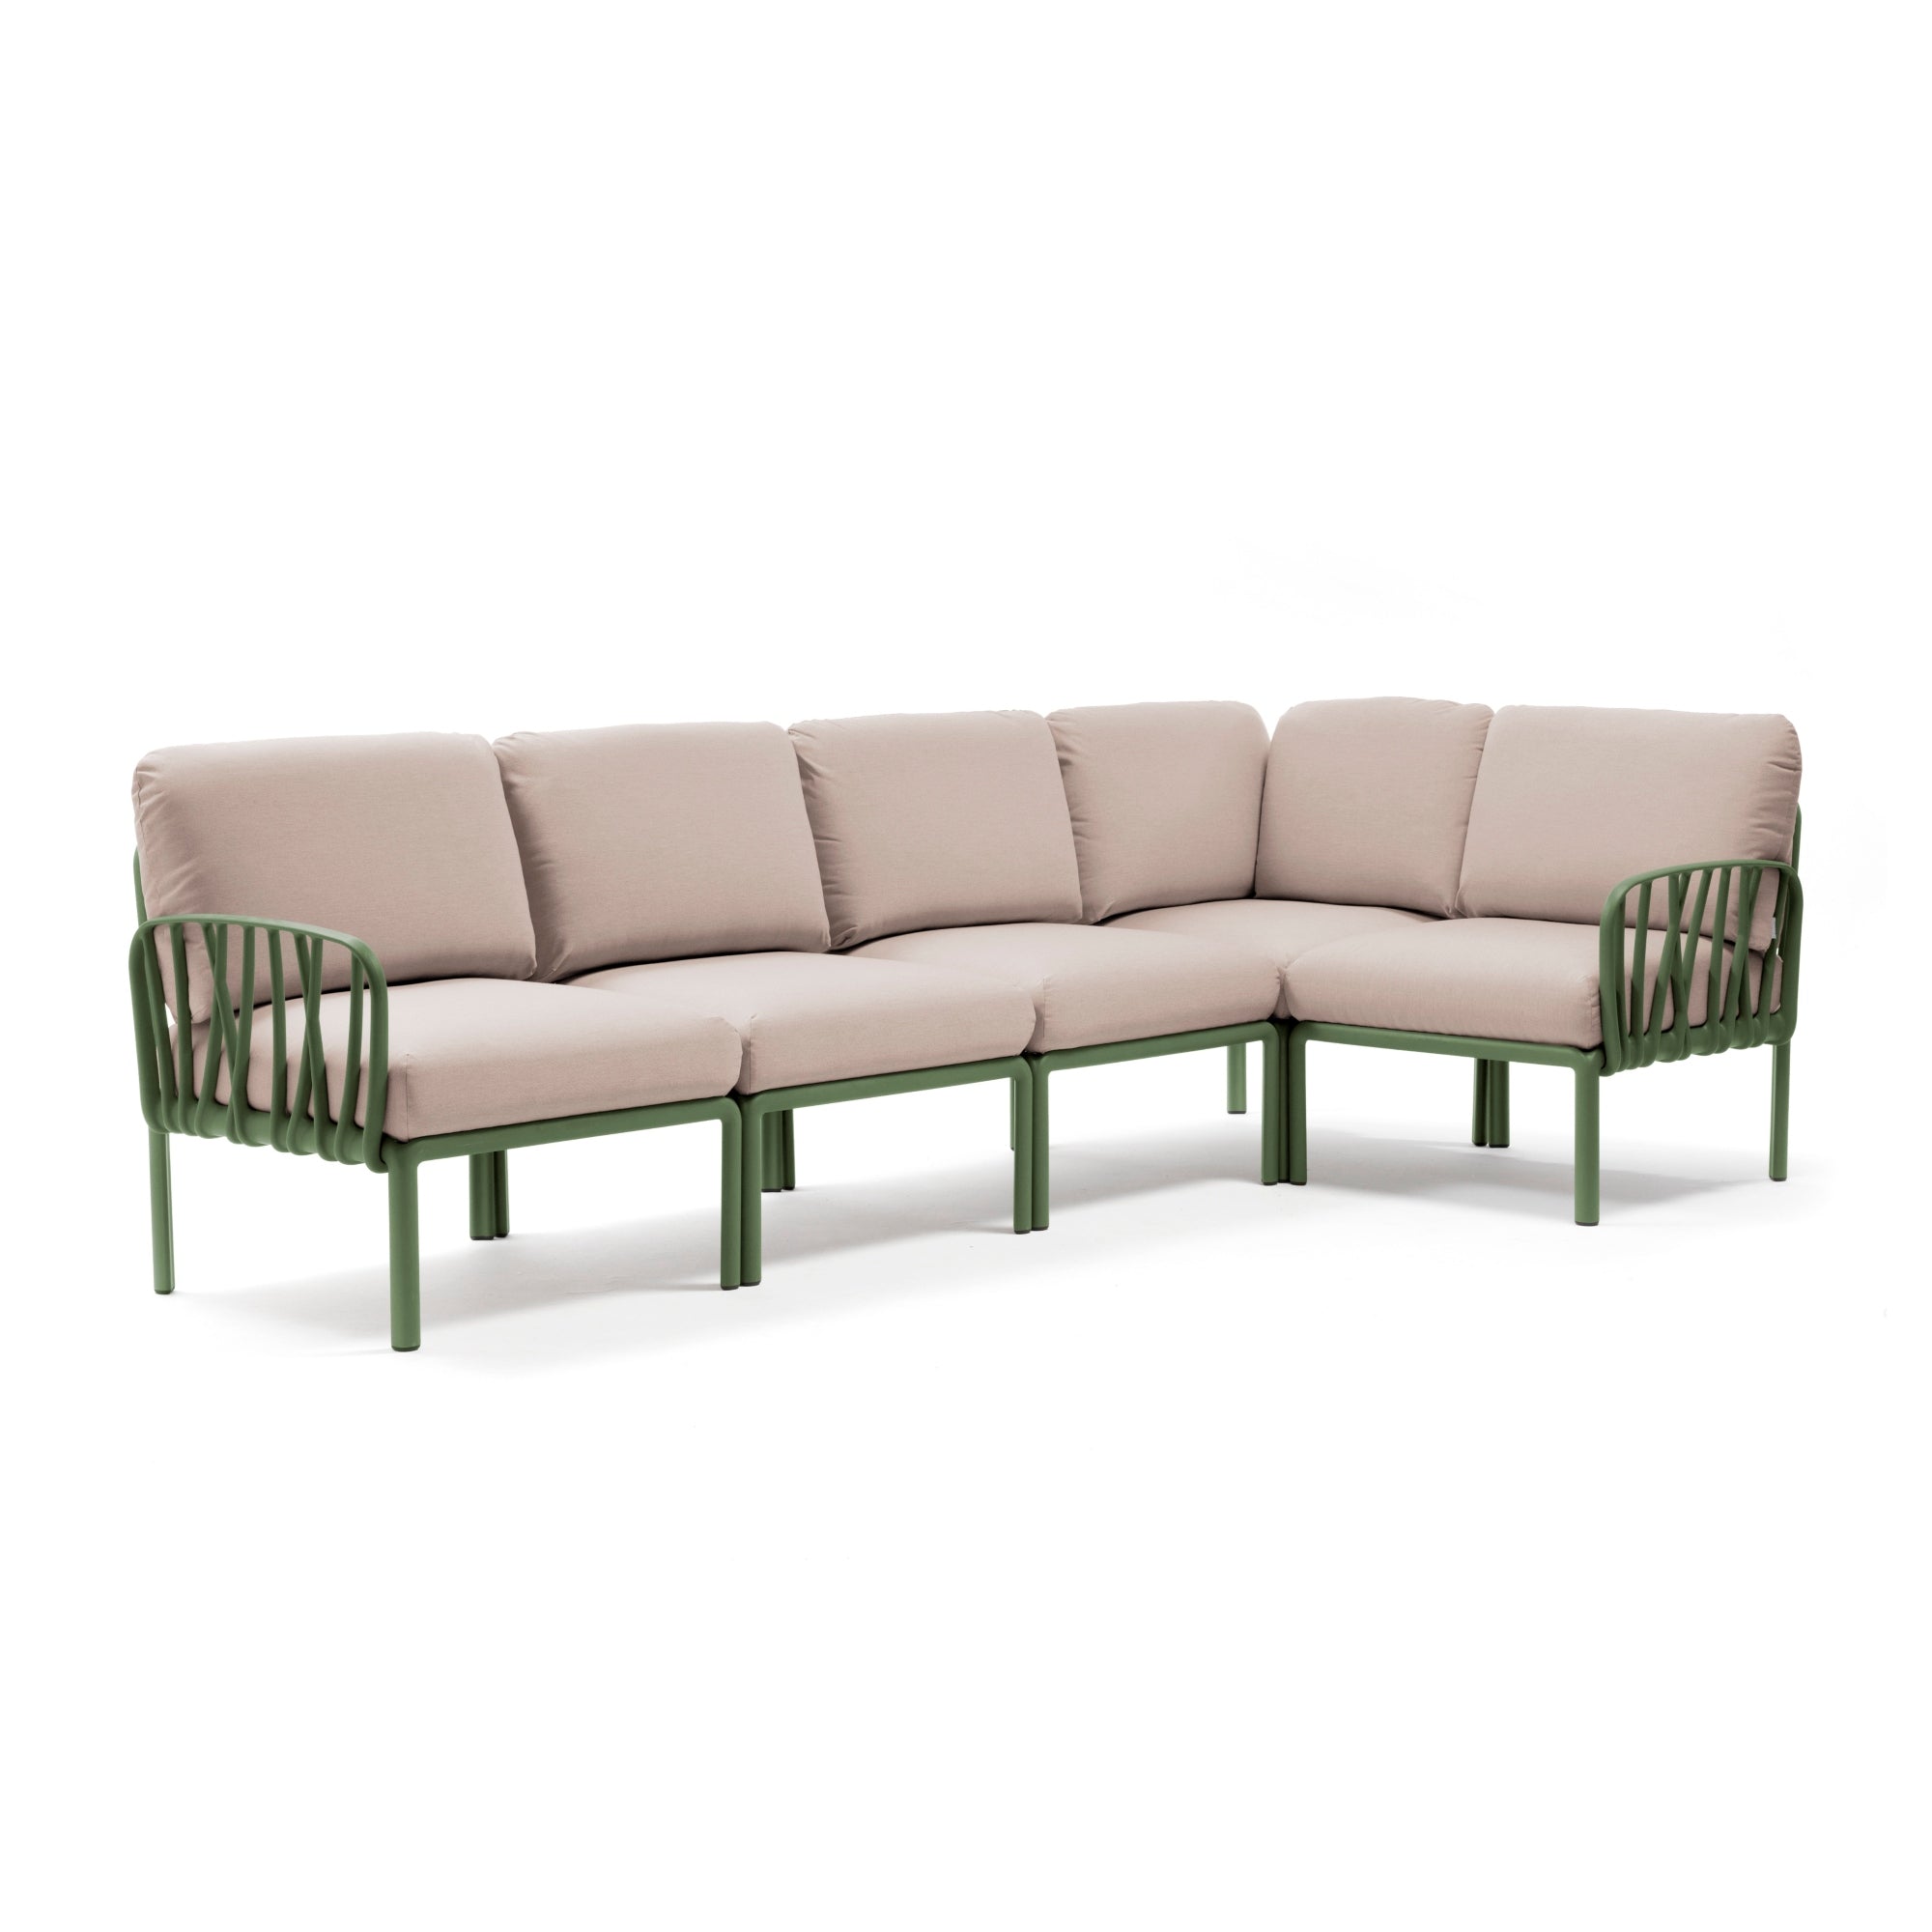 Nardi Komodo 5 sohva vihreä/beige Nardi